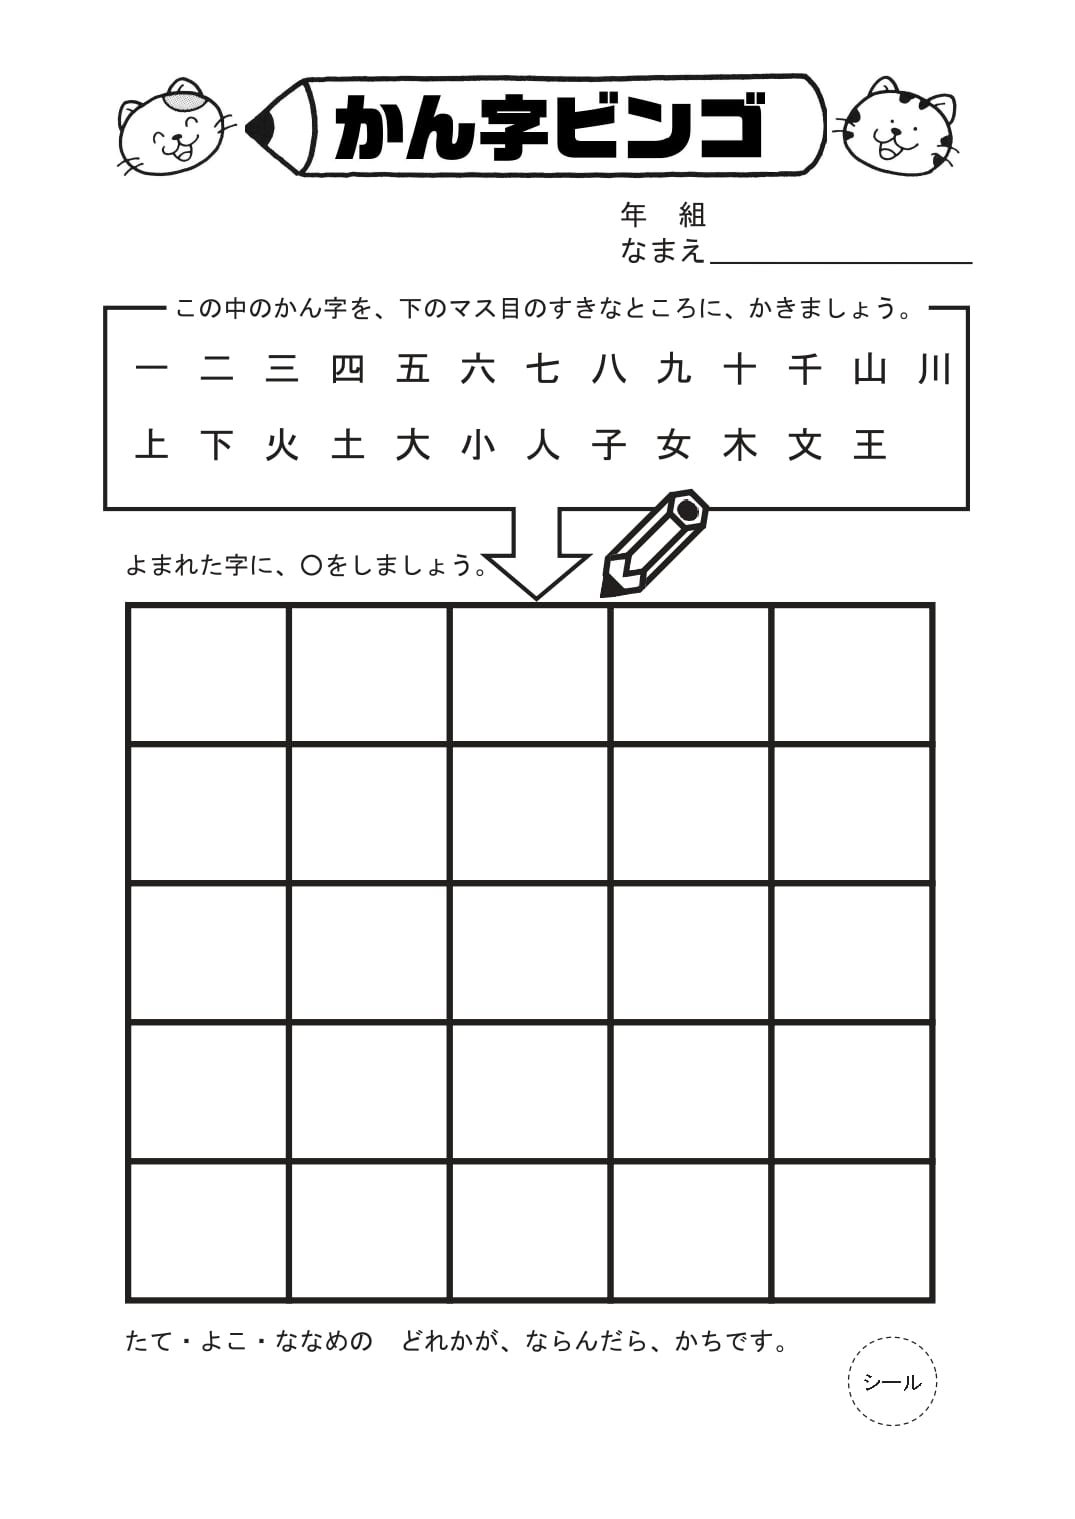 親子レクレーションは準備が簡単な漢字ビンゴカードで ハツヨム